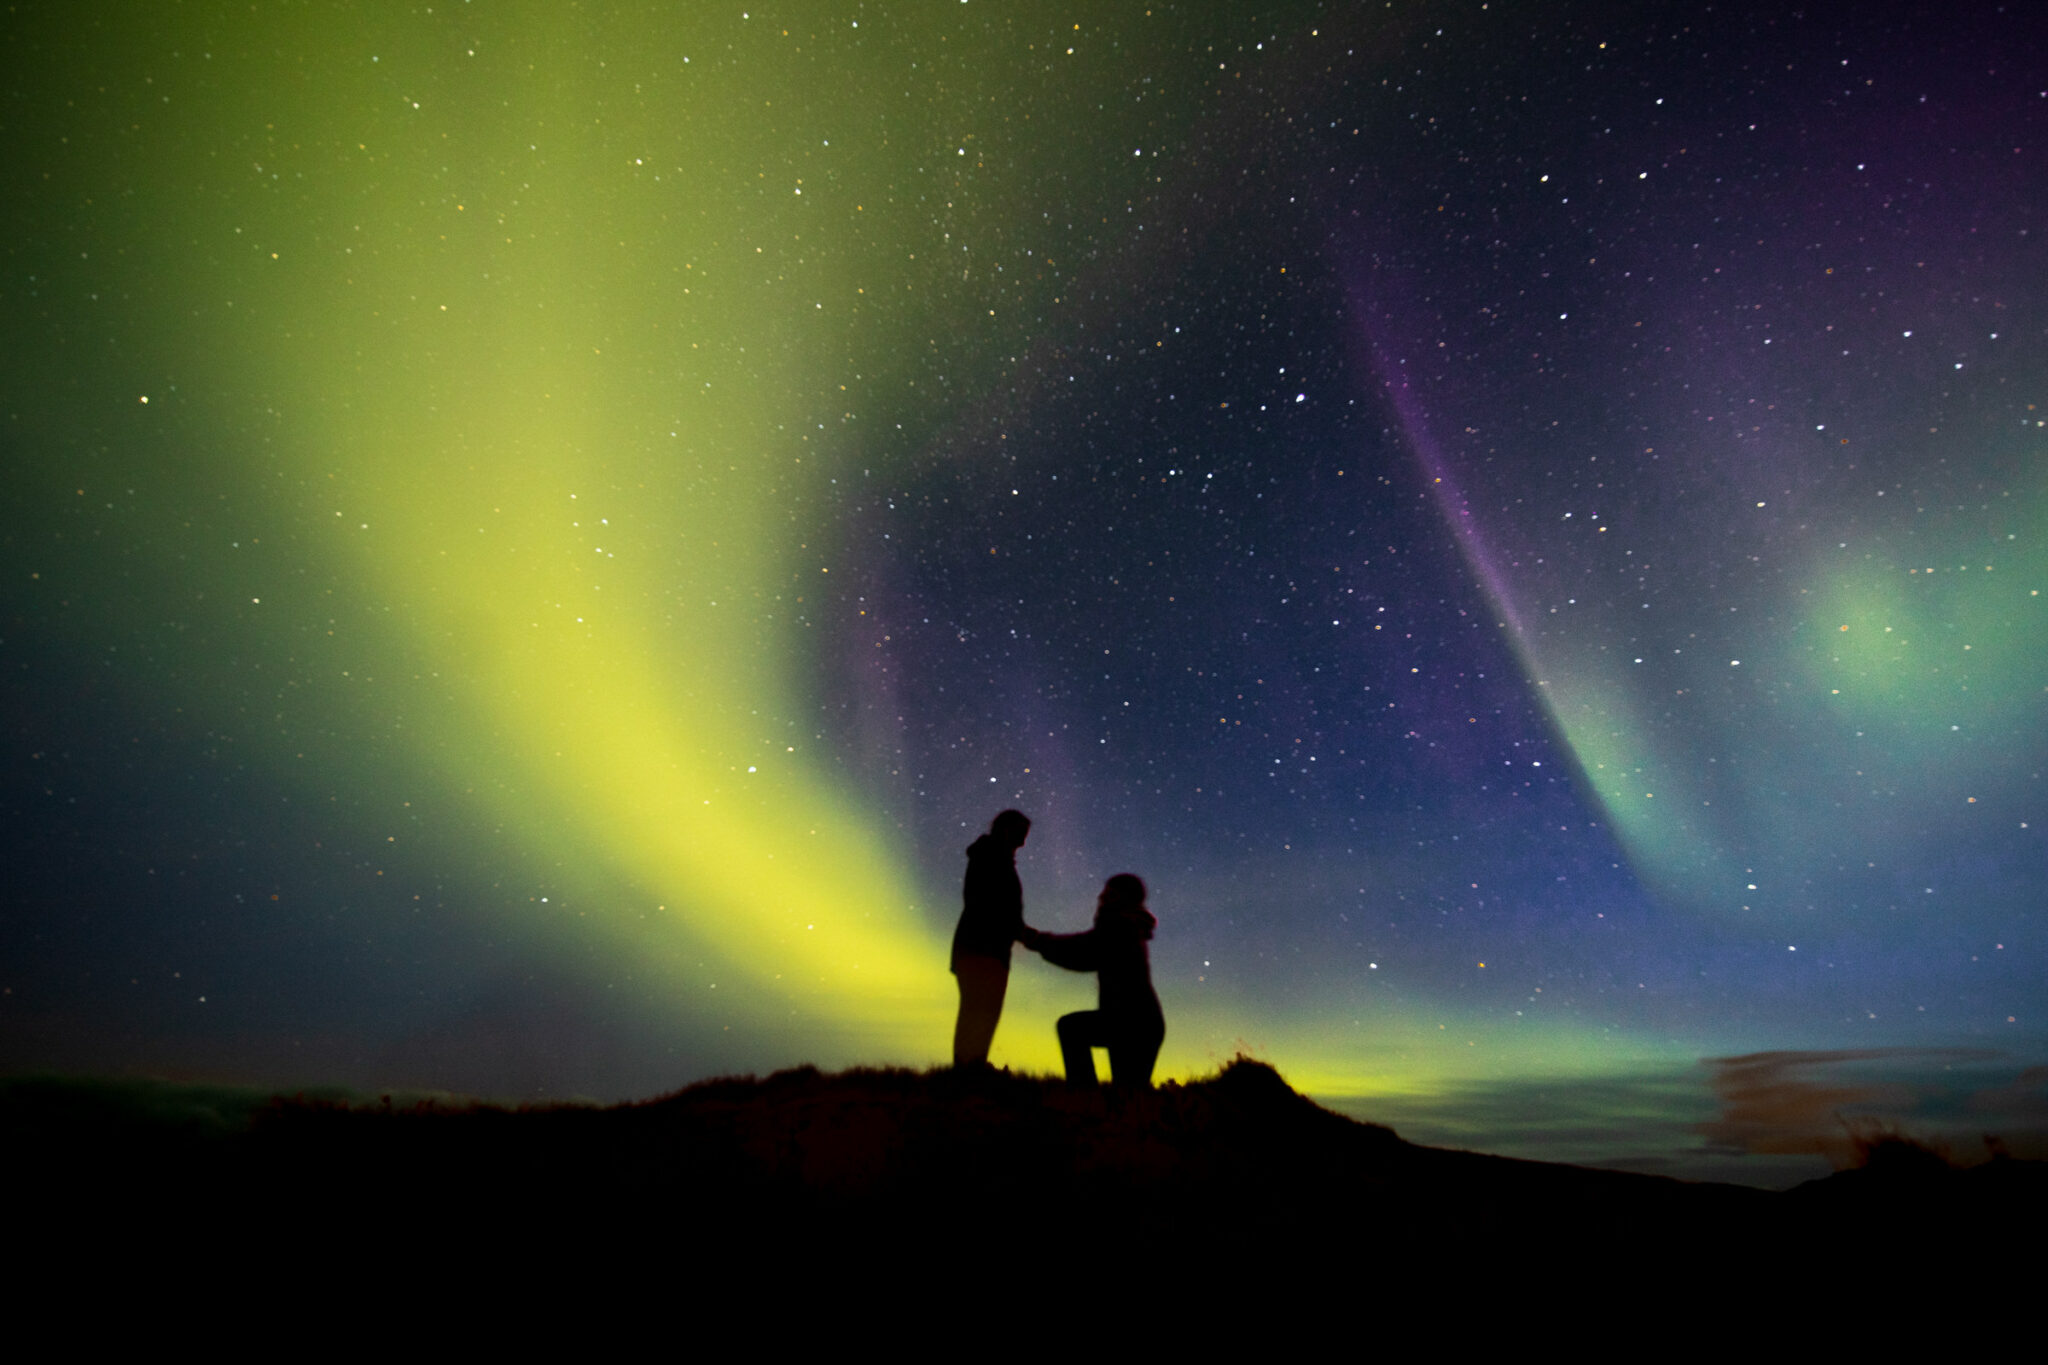 verlobungsfoto mit nordlichtern norwegen